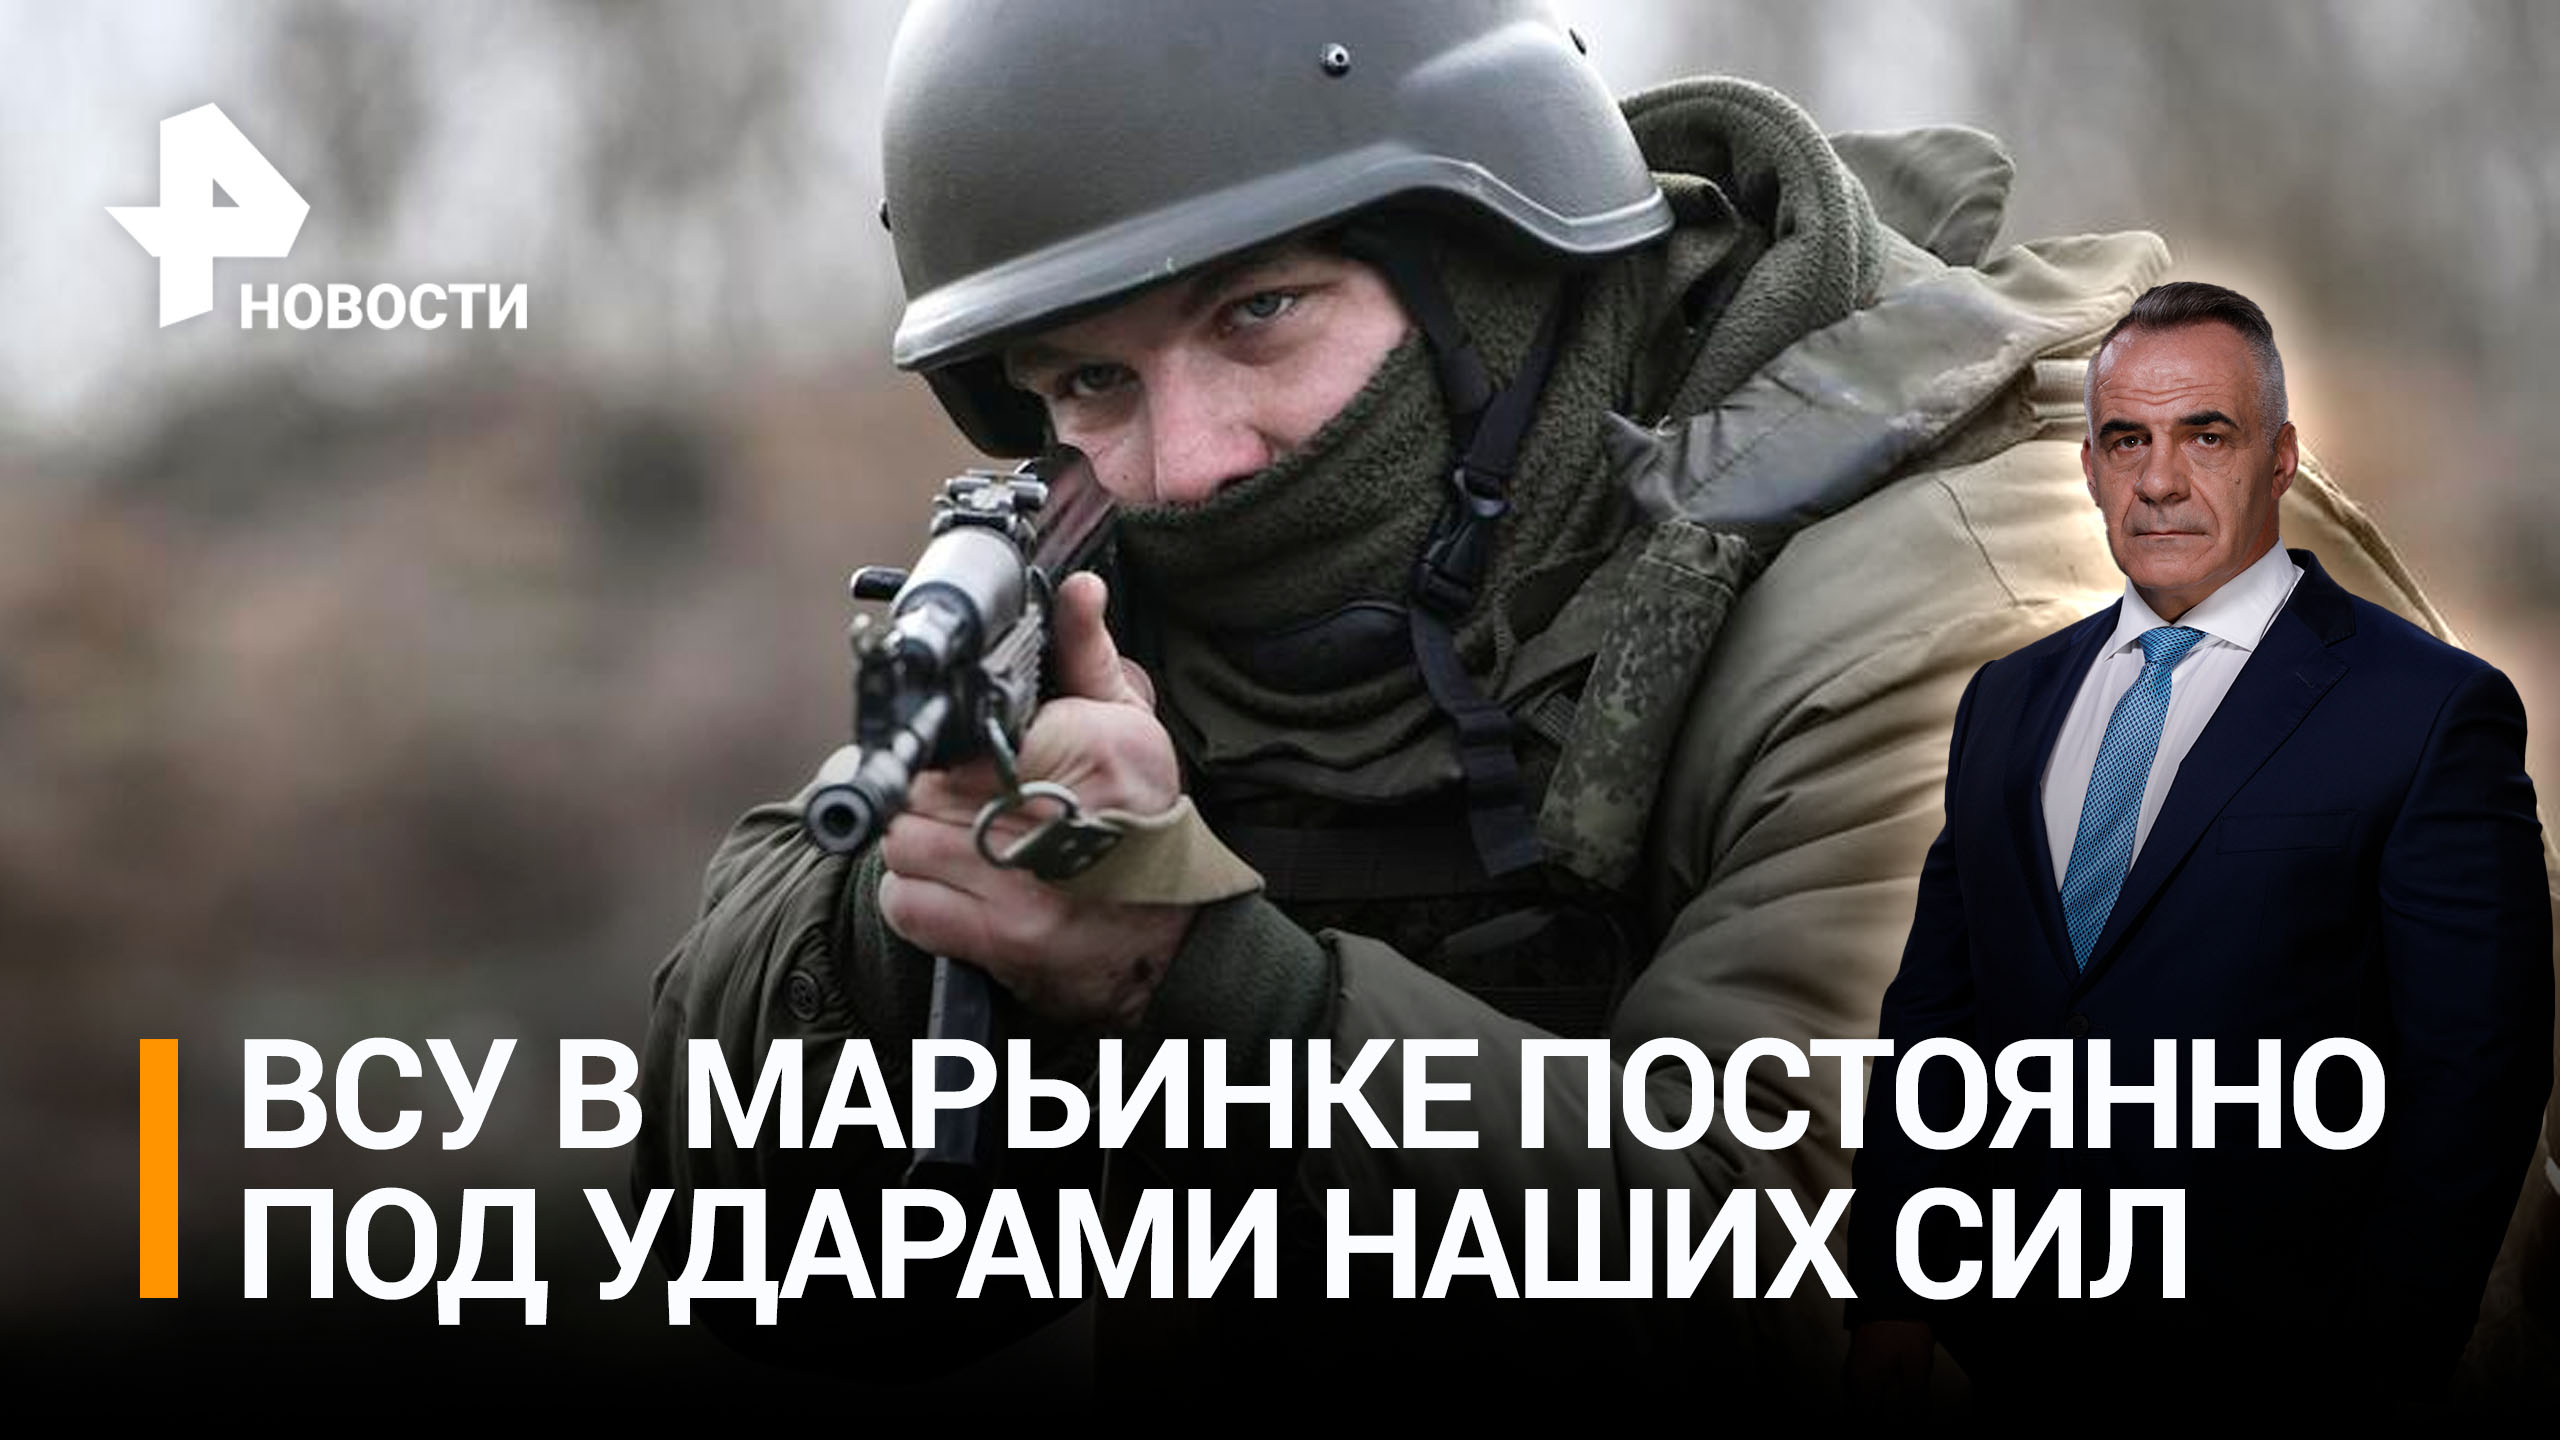 Российские военные работают по позициям ВСУ в Марьинке безостановочно / ИТОГИ с Петром Марченко